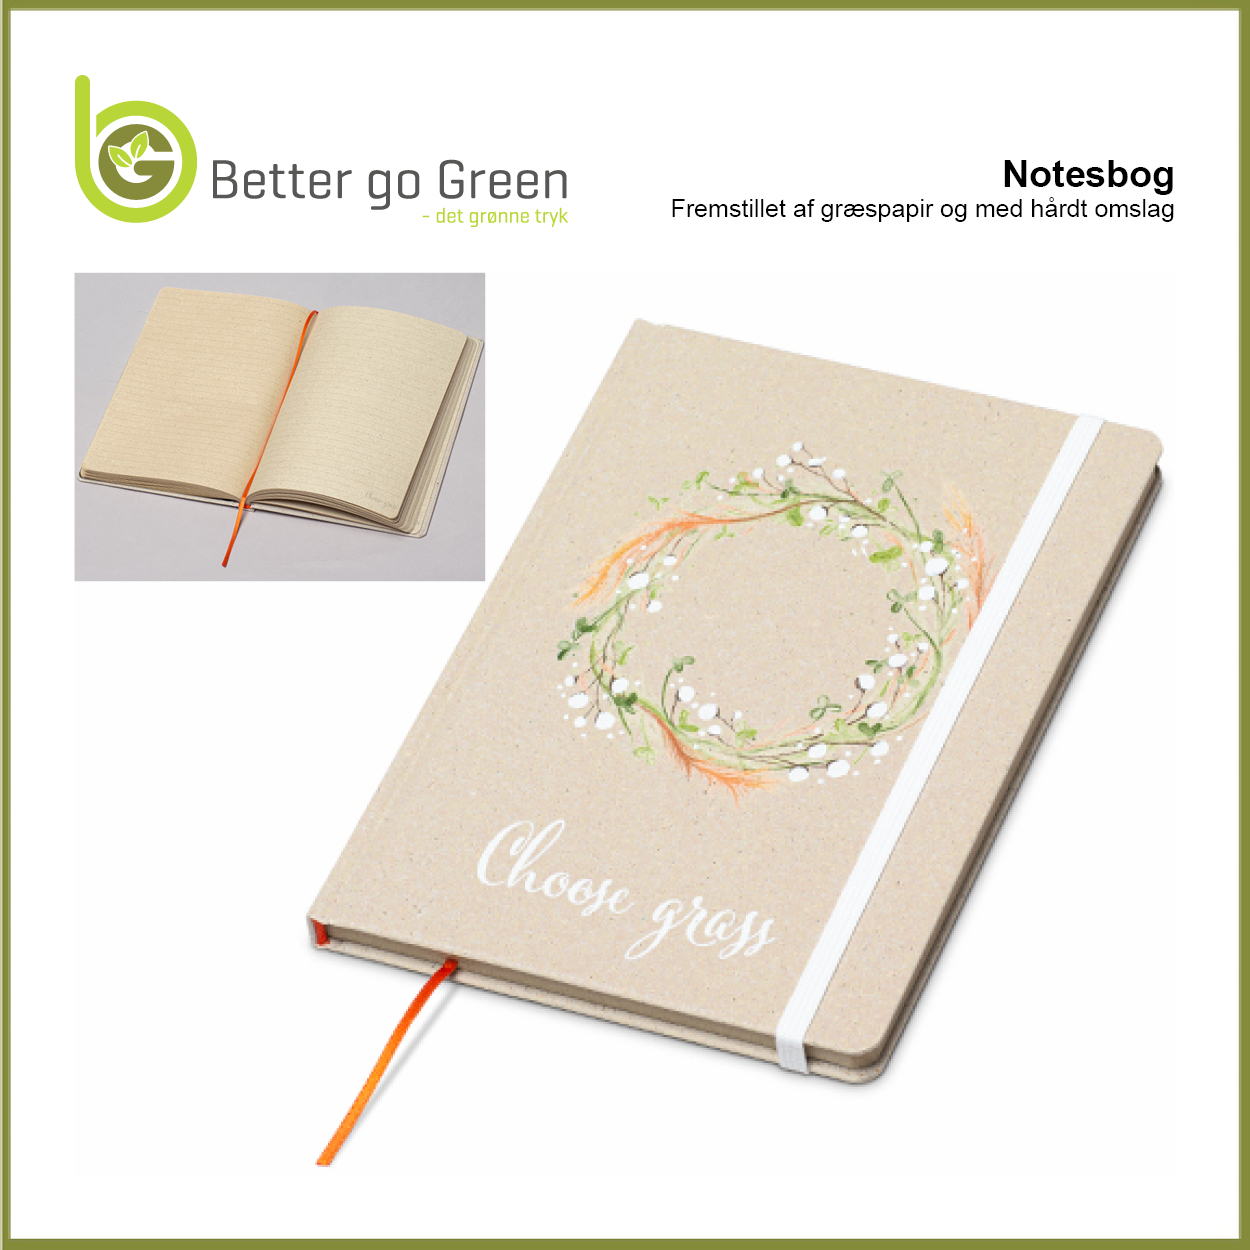 Notesbog af græspapir og med hårdt omslag får du hos BetterGoGreen